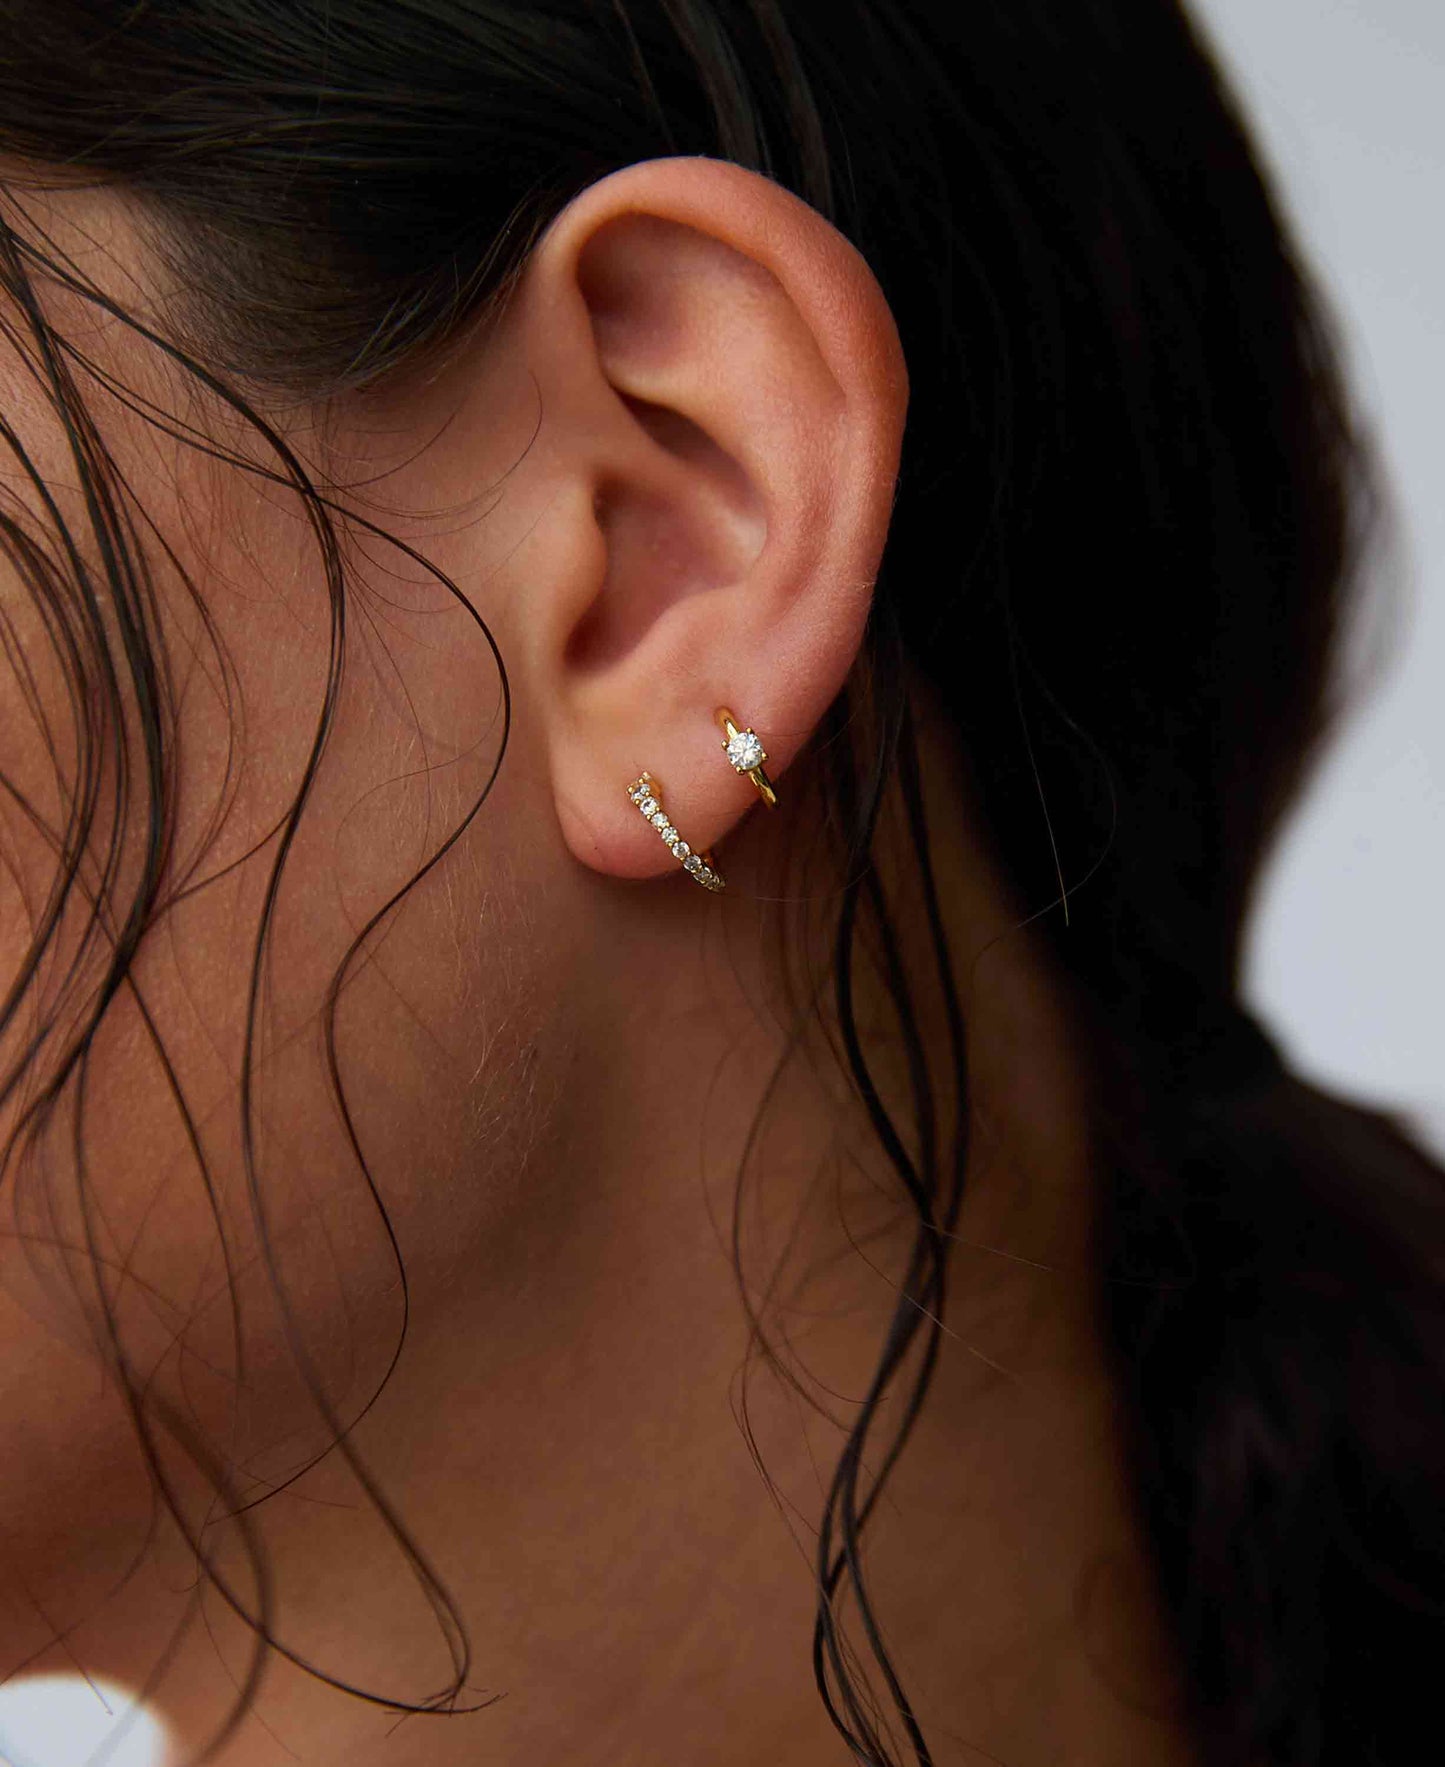 Elvita earrings